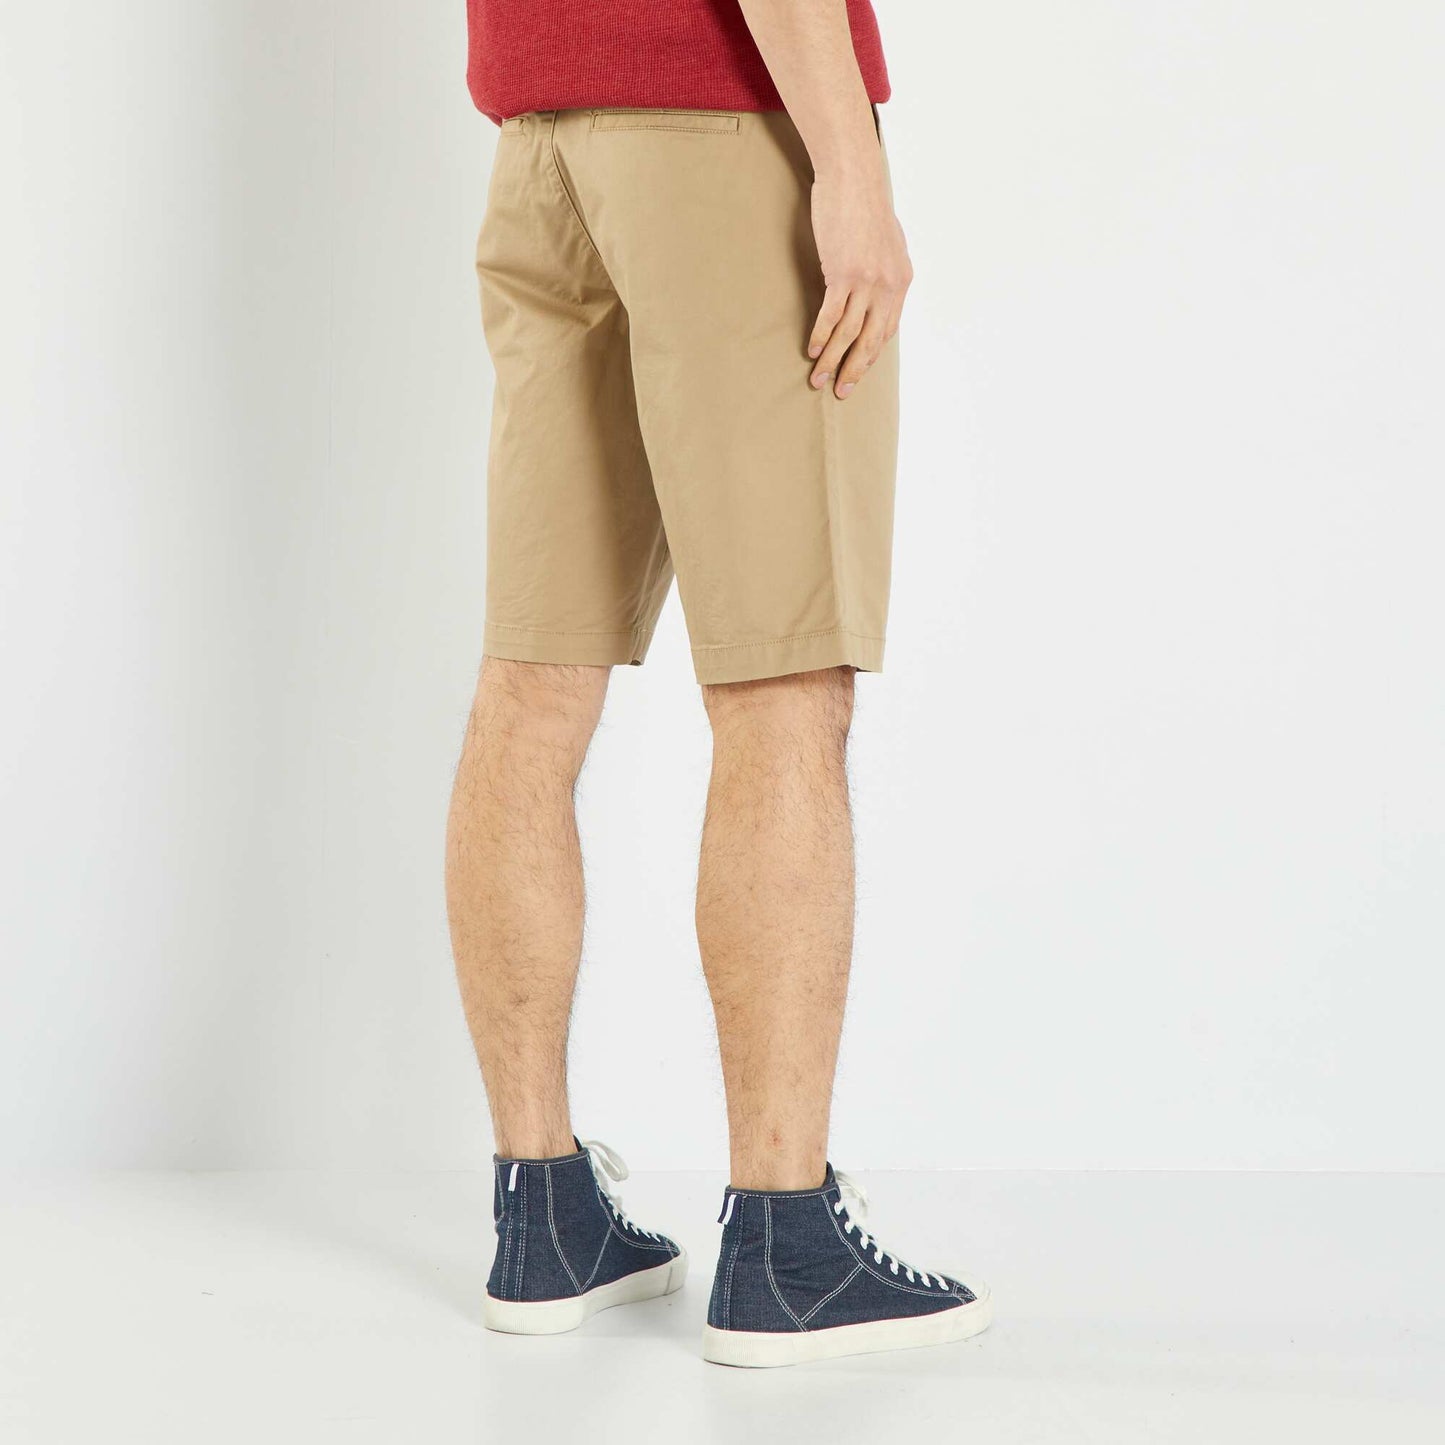 Straight-leg chino Bermuda shorts heathered beige